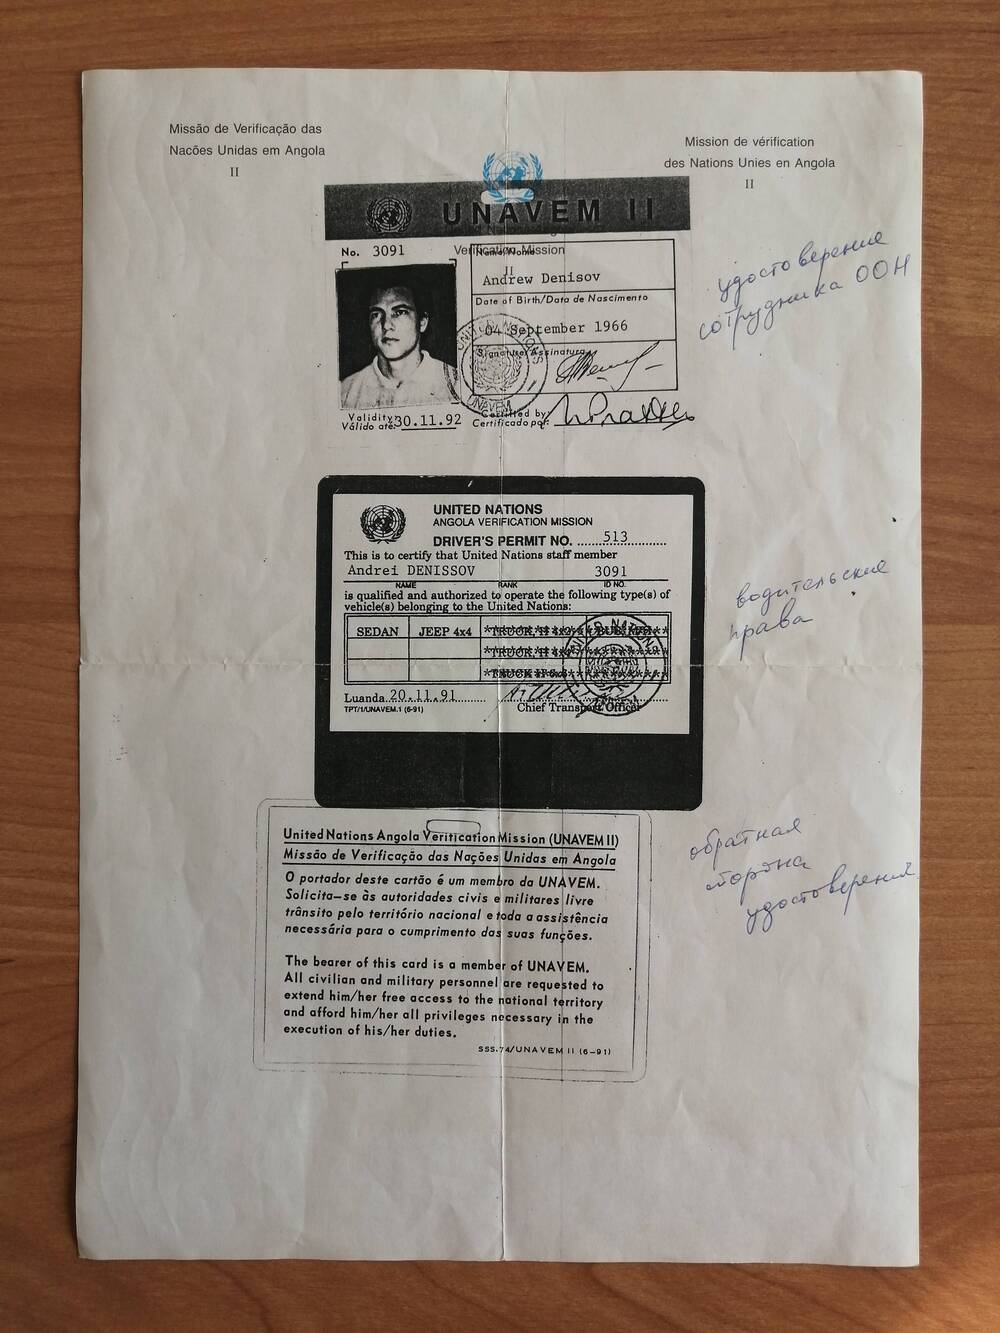 Лист с копией удостоверения сотрудника ООН, водительских прав Денисова Андрея Владимировича.